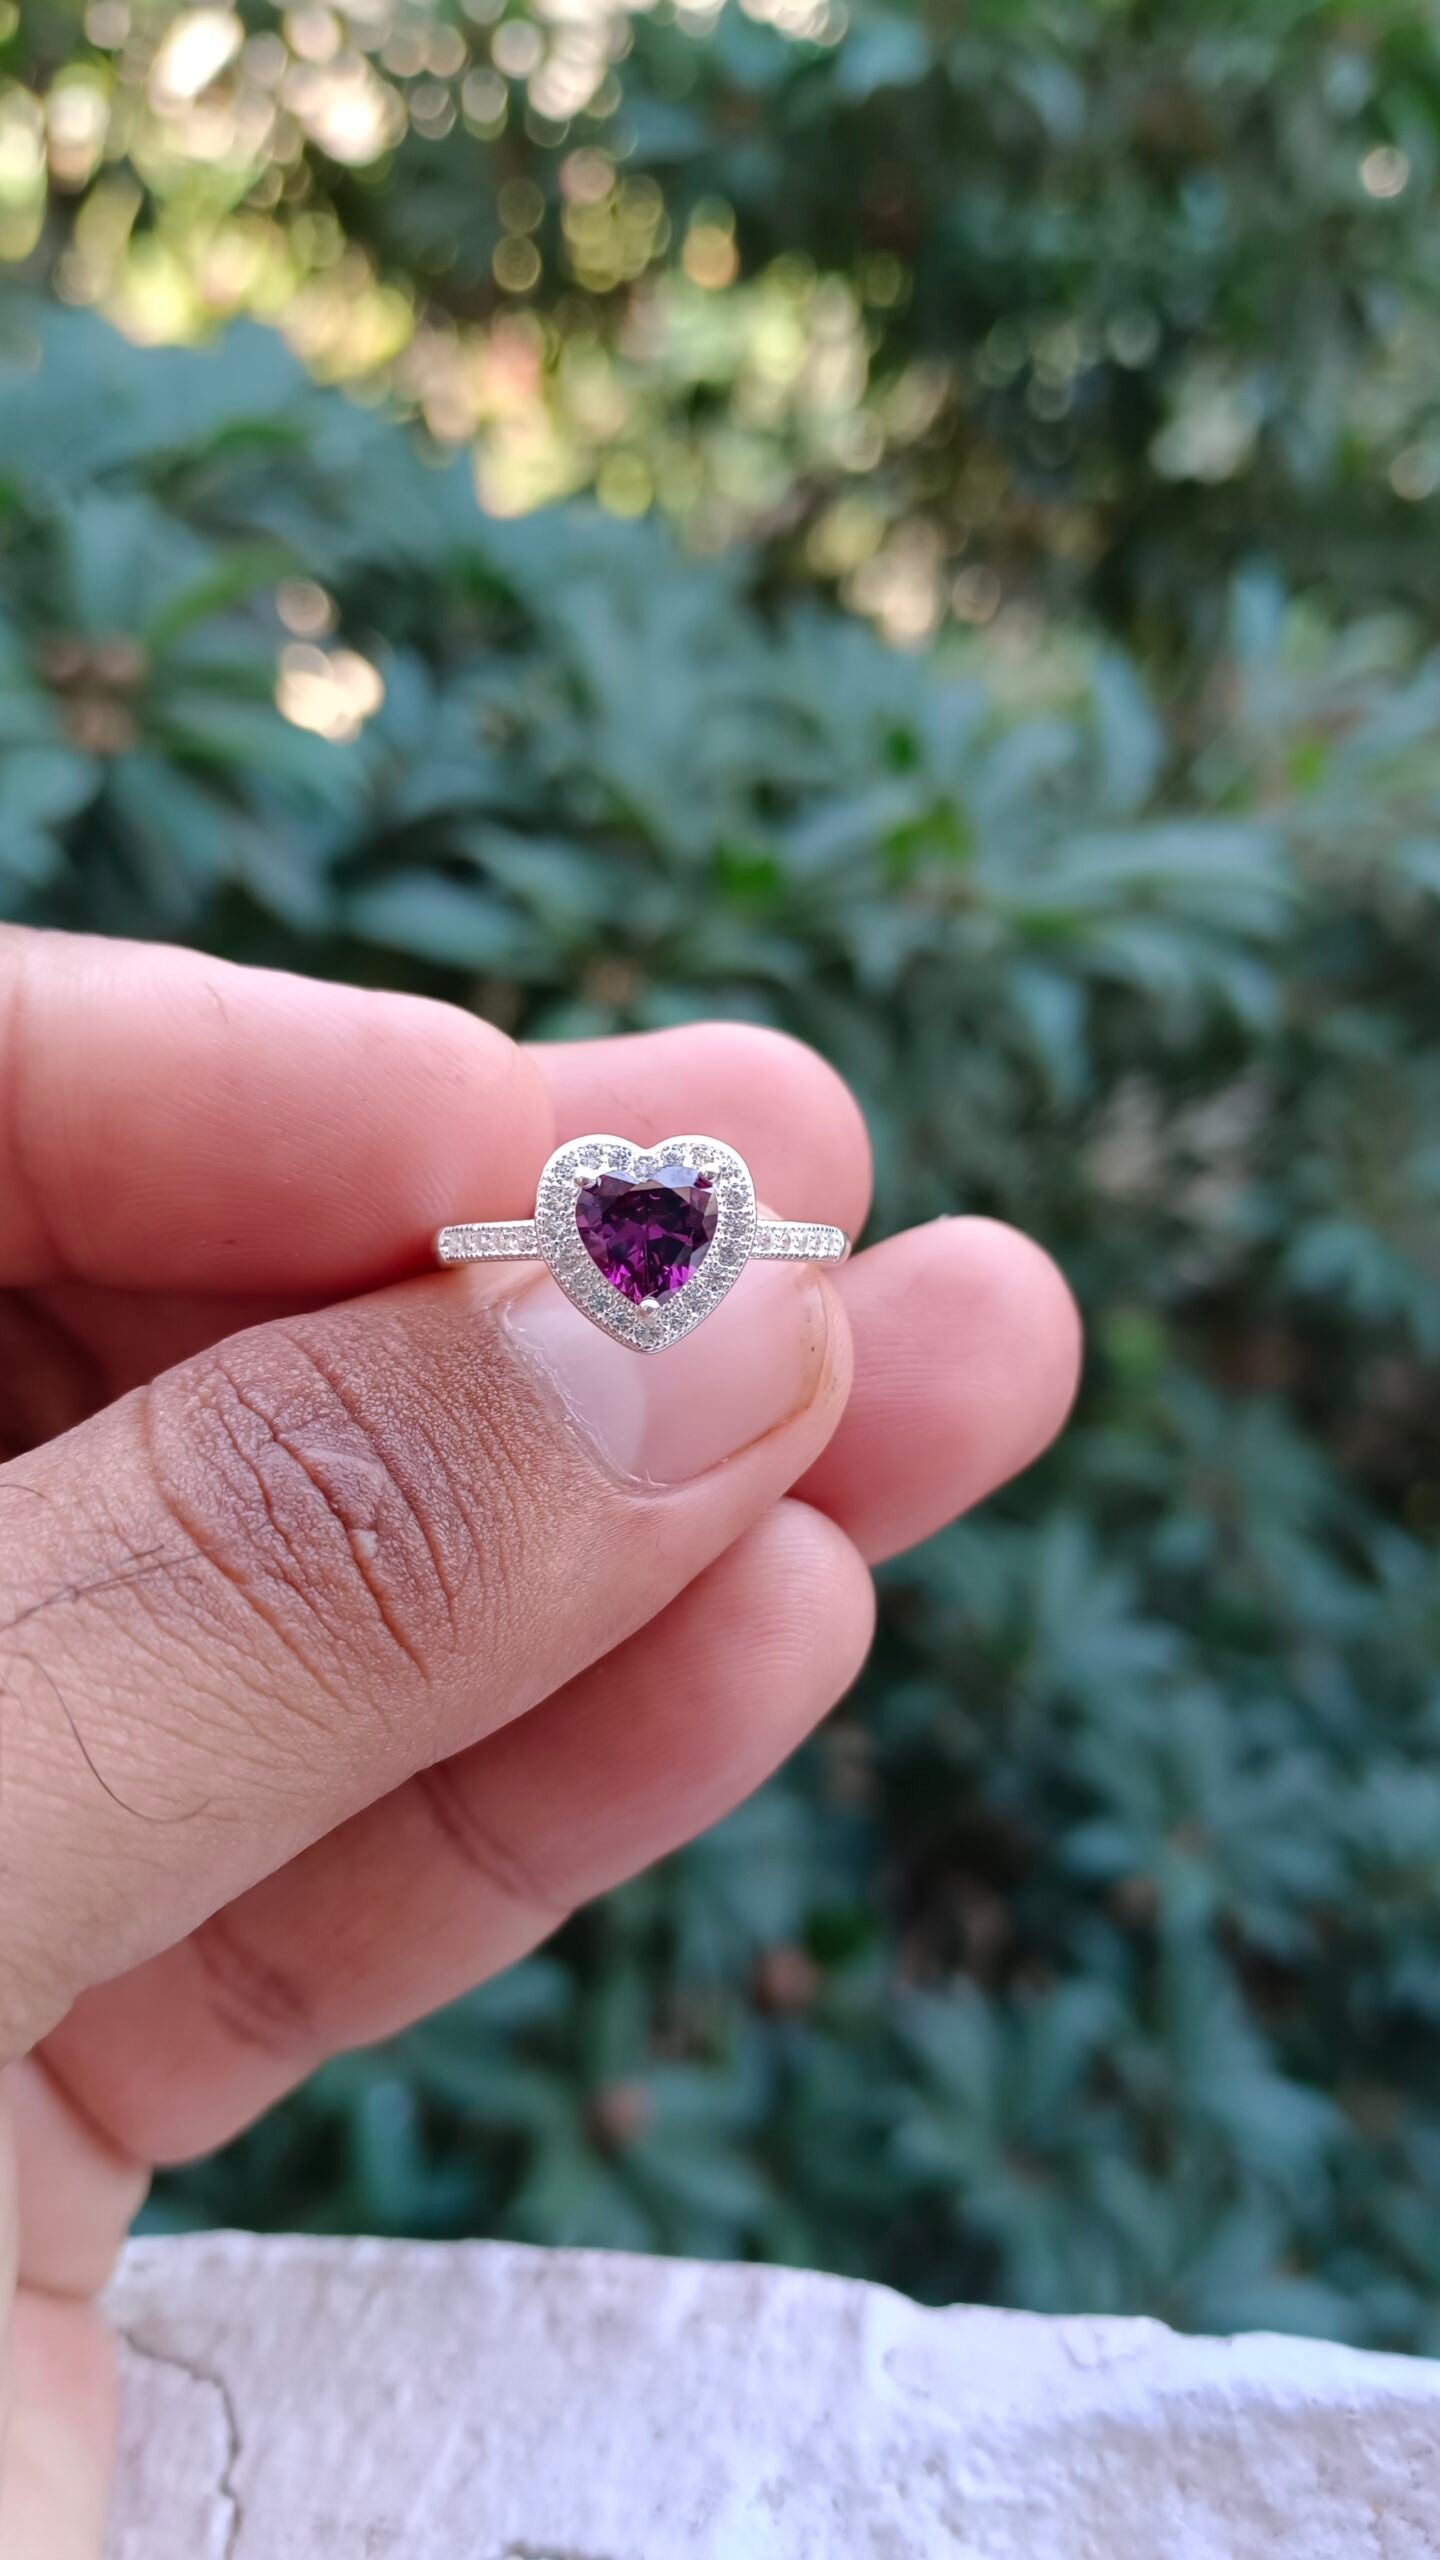 Purple Zircon Ladies Ring